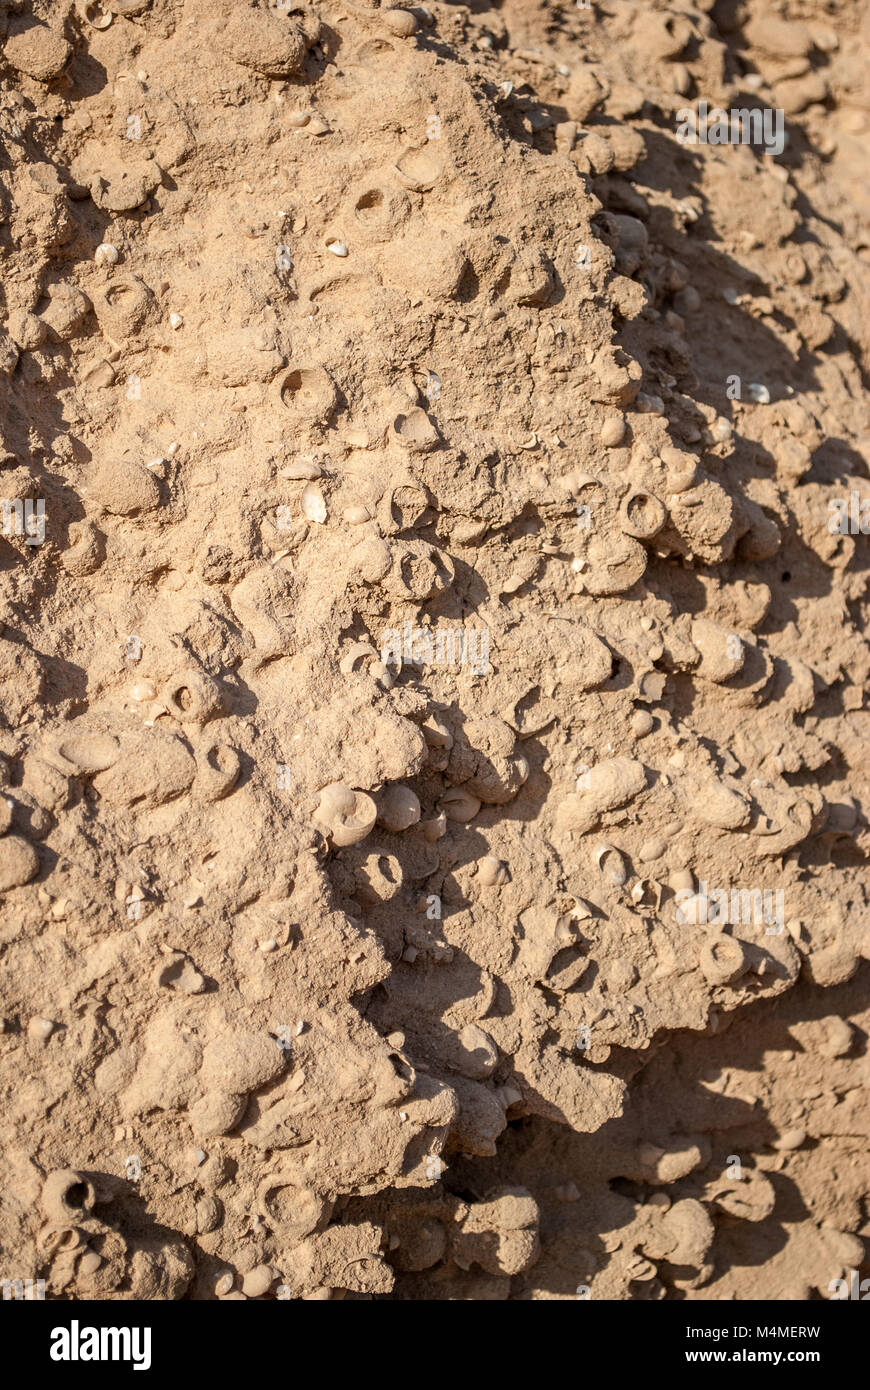 Sedimentäre Schicht Sand mit Schnecken, die Insel La Graciosa, Kanarische Inseln, Spanien Stockfoto